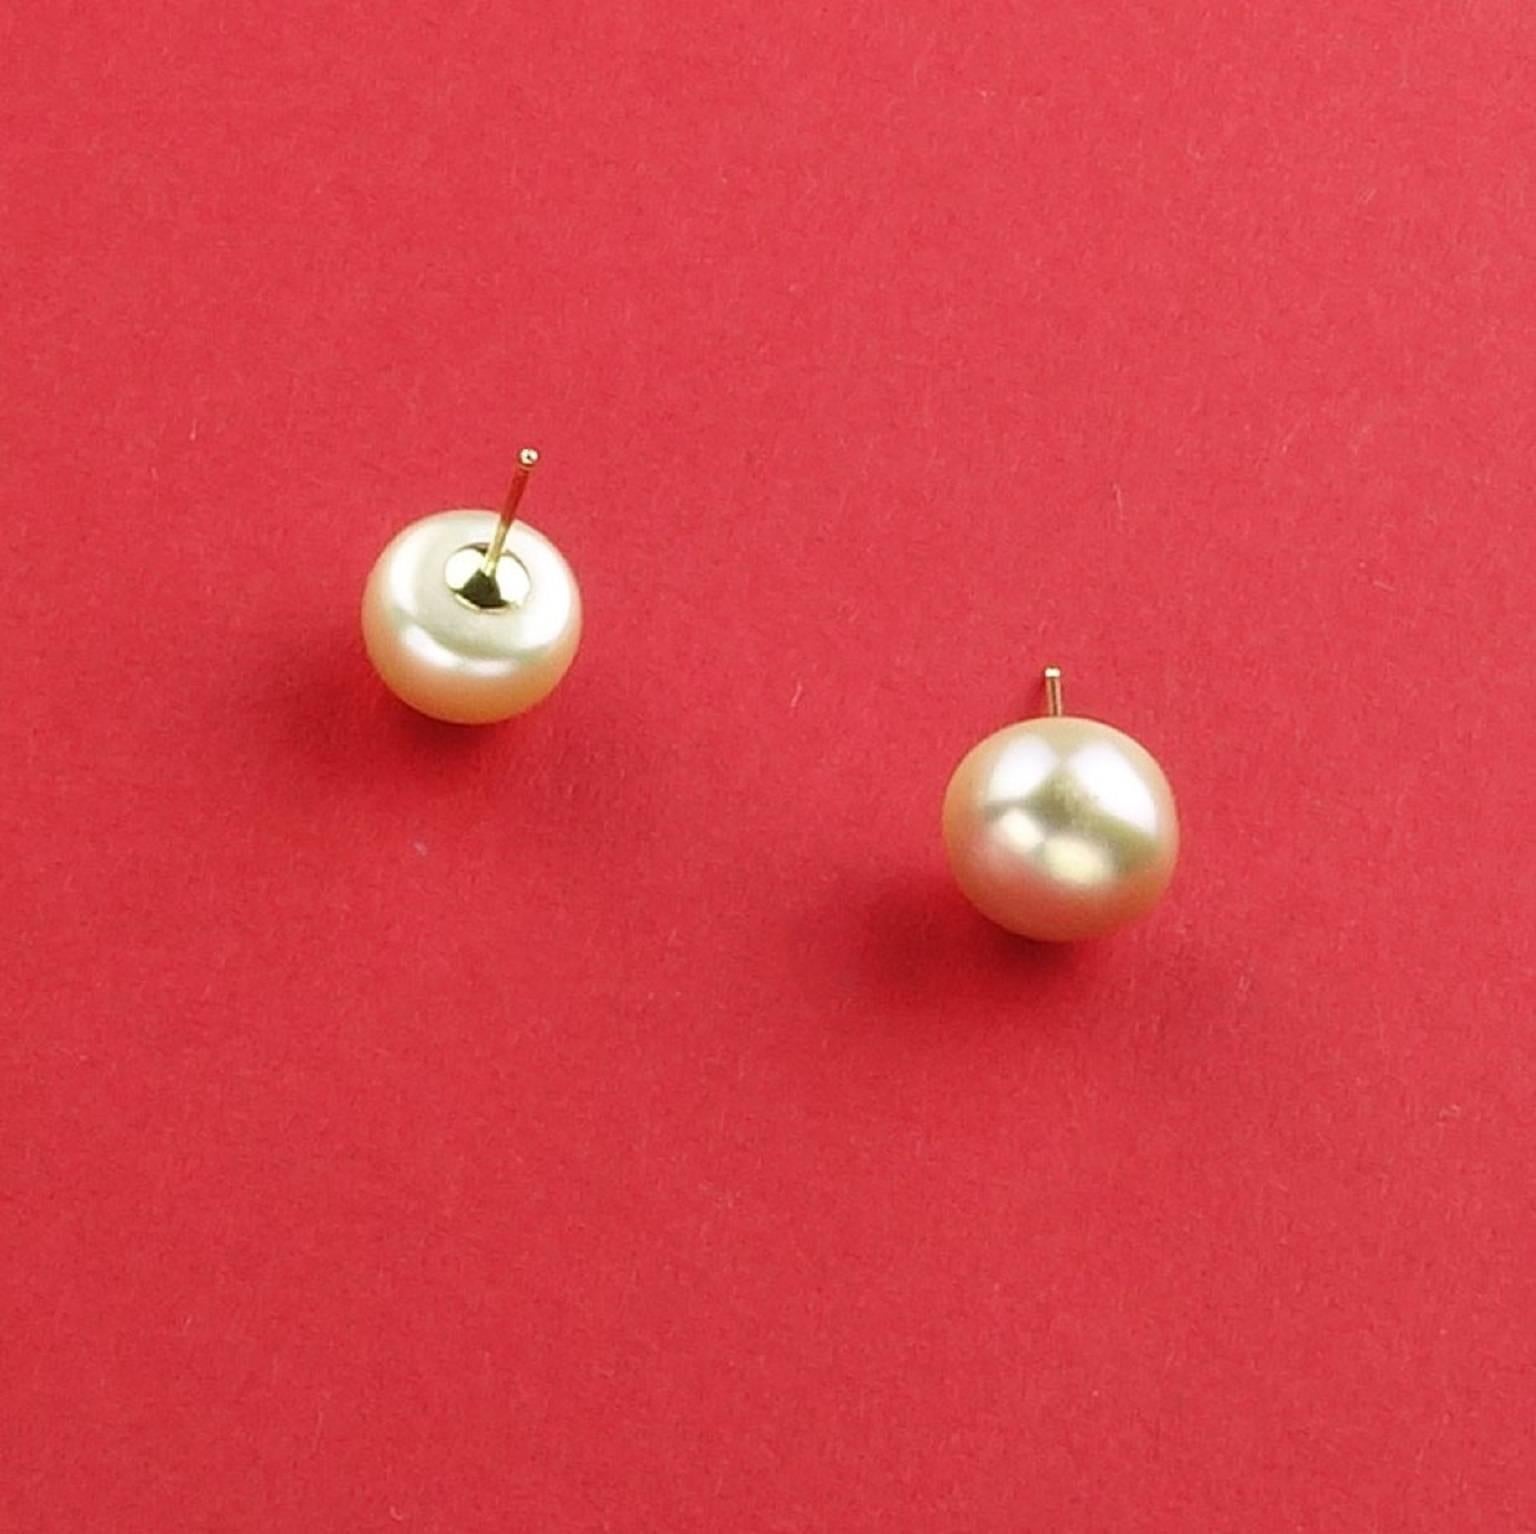 11mm pearl stud earrings